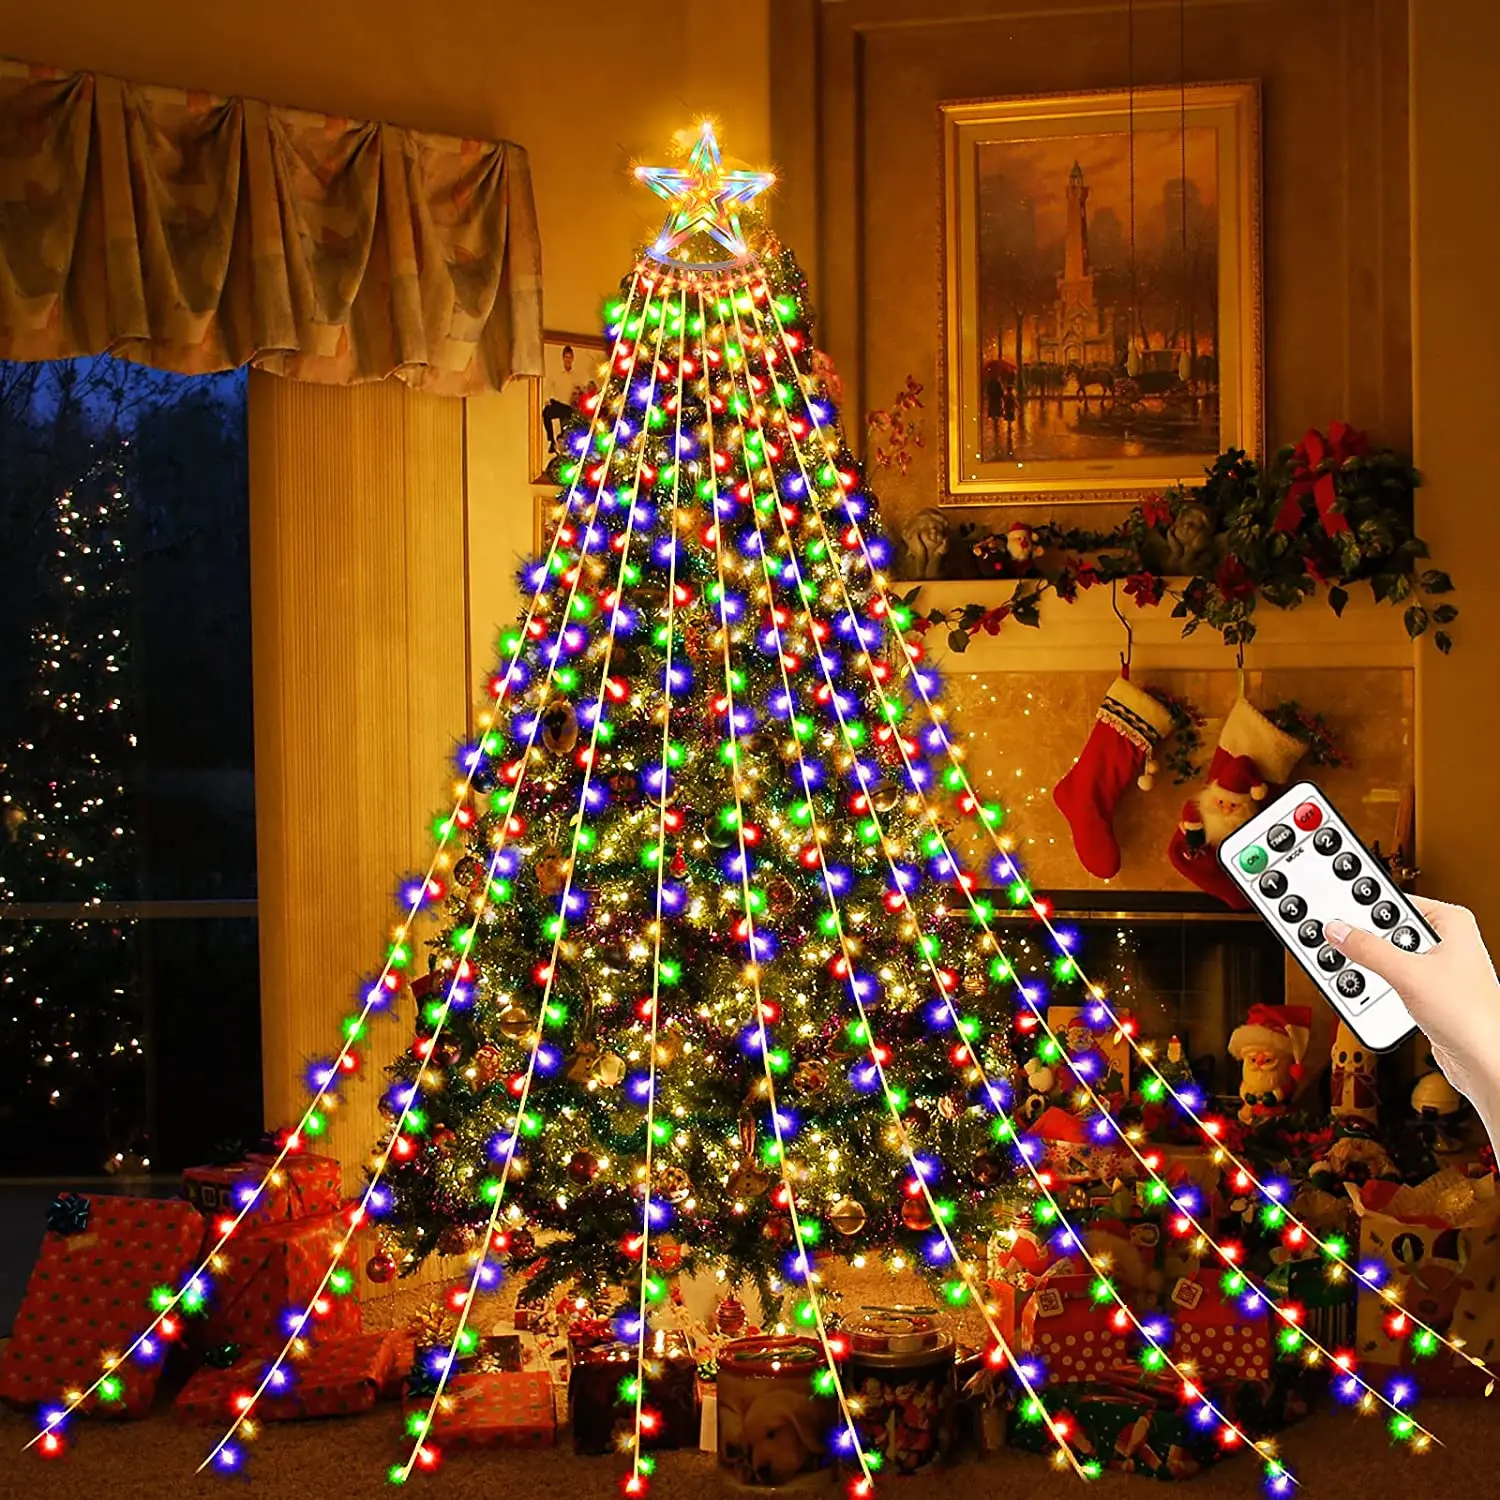 https://ae01.alicdn.com/kf/Sc0db45c779f041068b722c1c88c6fa1aH/Christmas-LED-Star-String-Lights-USB-Battery-Remote-Control-Fairy-Garland-Light-for-Navidad-Room-Tree.jpg